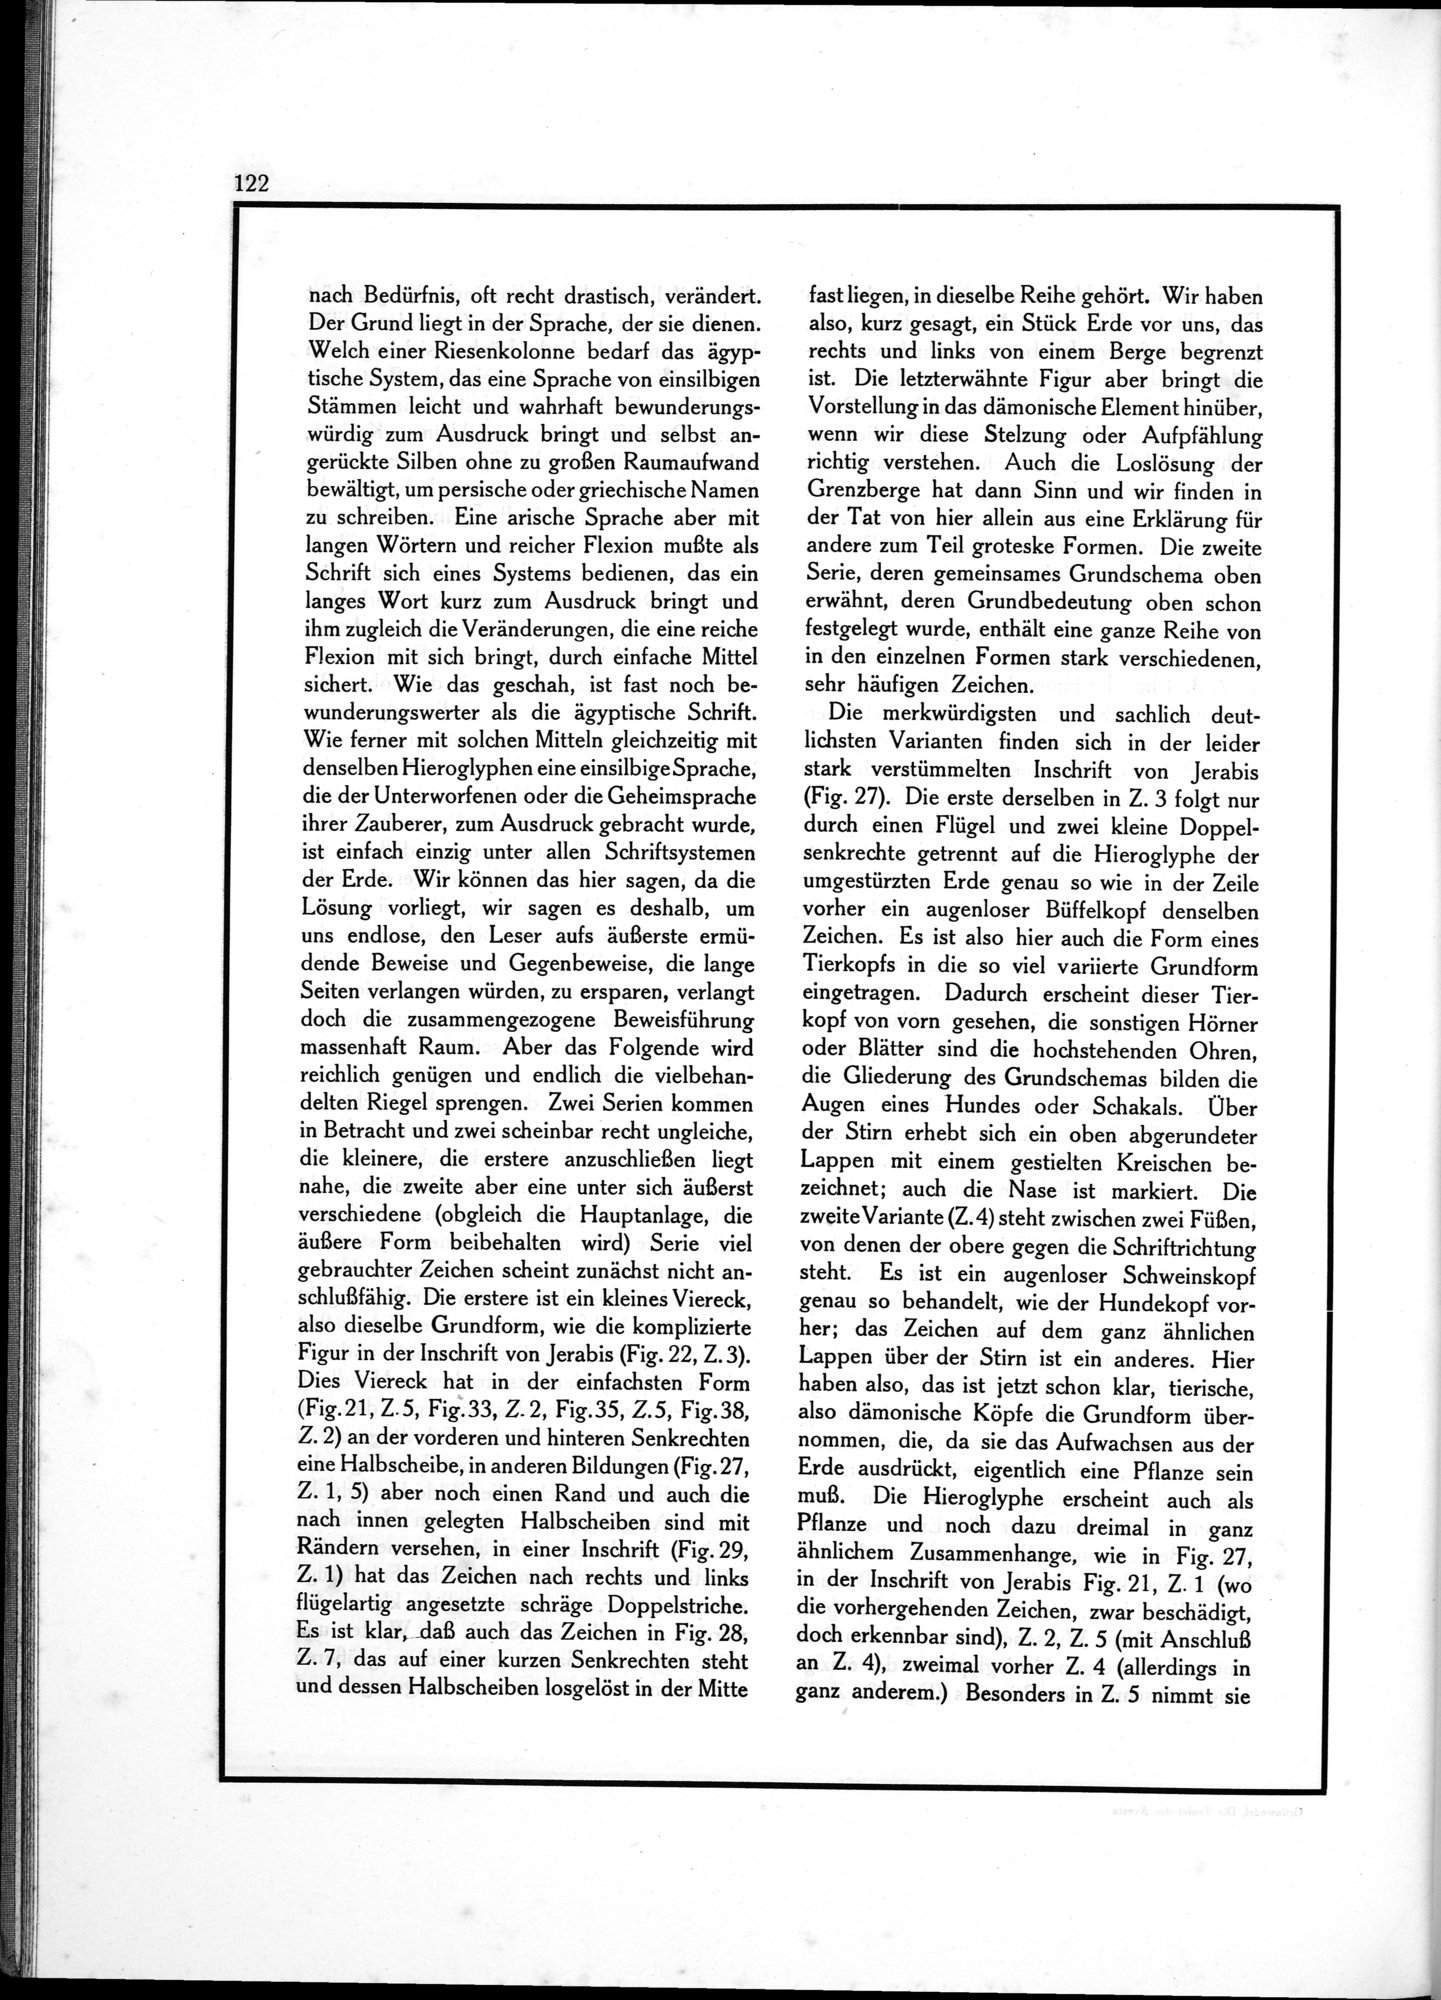 Die Teufel des Avesta und Ihre Beziehungen zur Ikonographie des Buddhismus Zentral-Asiens : vol.1 / Page 126 (Grayscale High Resolution Image)